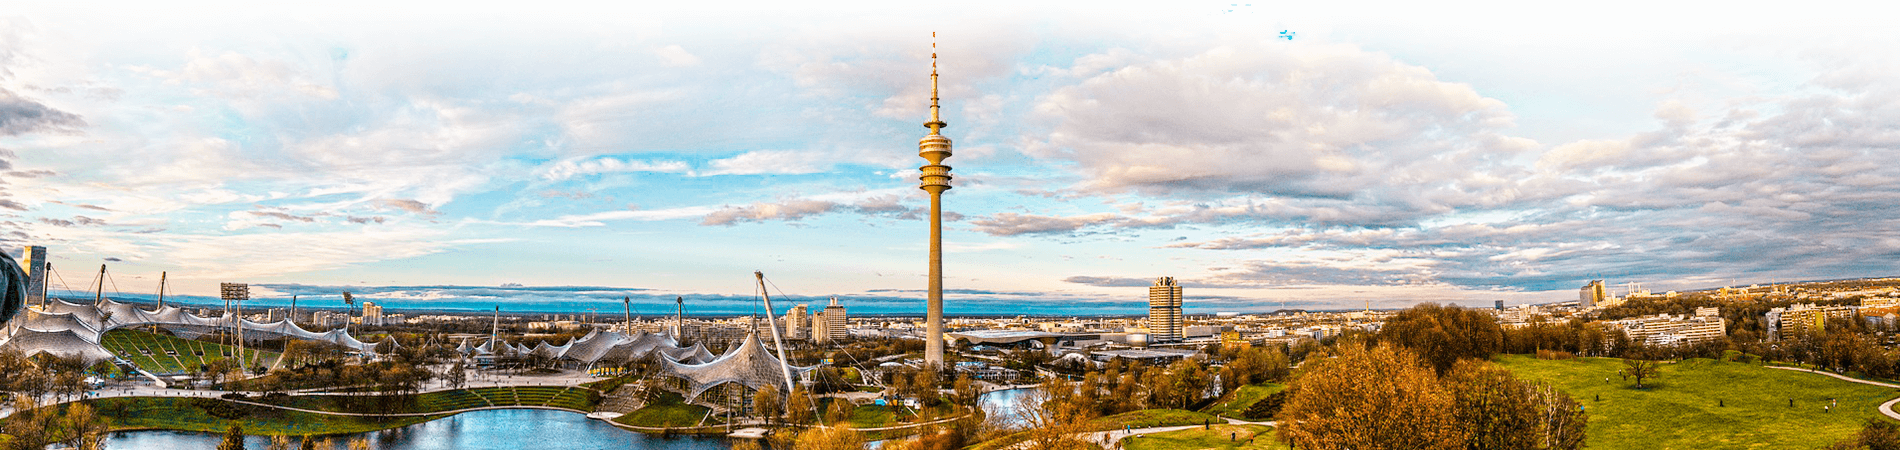 Softwareentwicklung in Munich